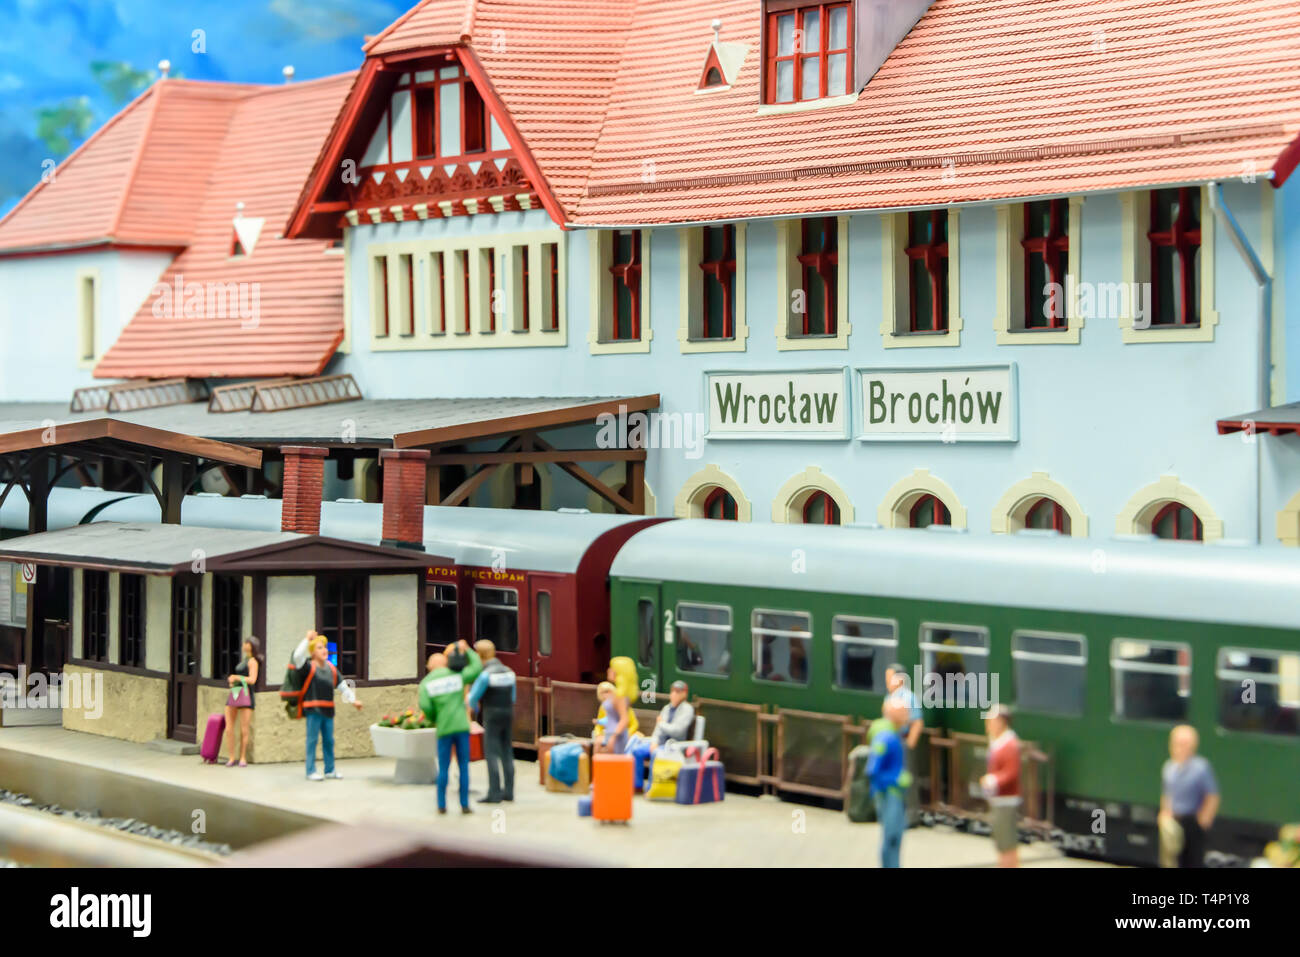 Miniature model of Wroclaw Railway Station, at Kolejkowo, Wrocław, Wroclaw, Wroklaw, Poland Stock Photo